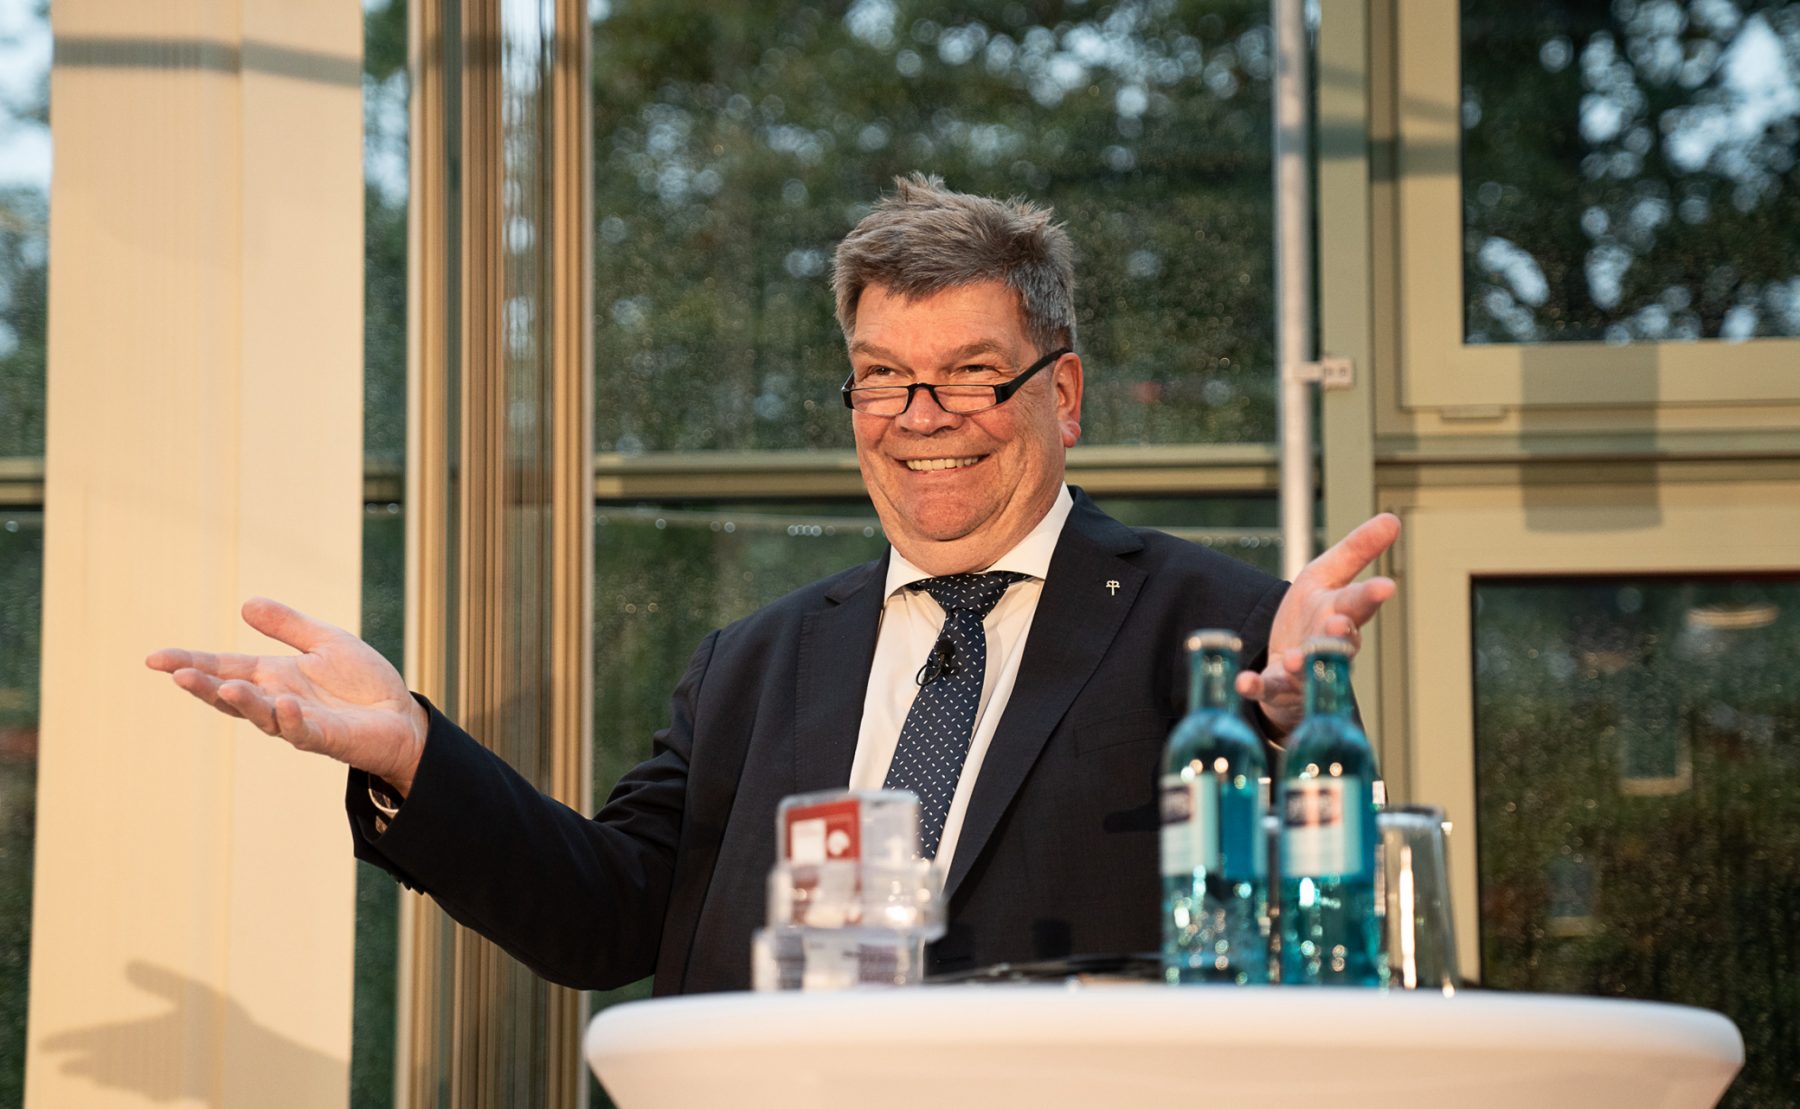 Martin Wulff, Geschäftsführer des Deutschen Spendenrates e. V.